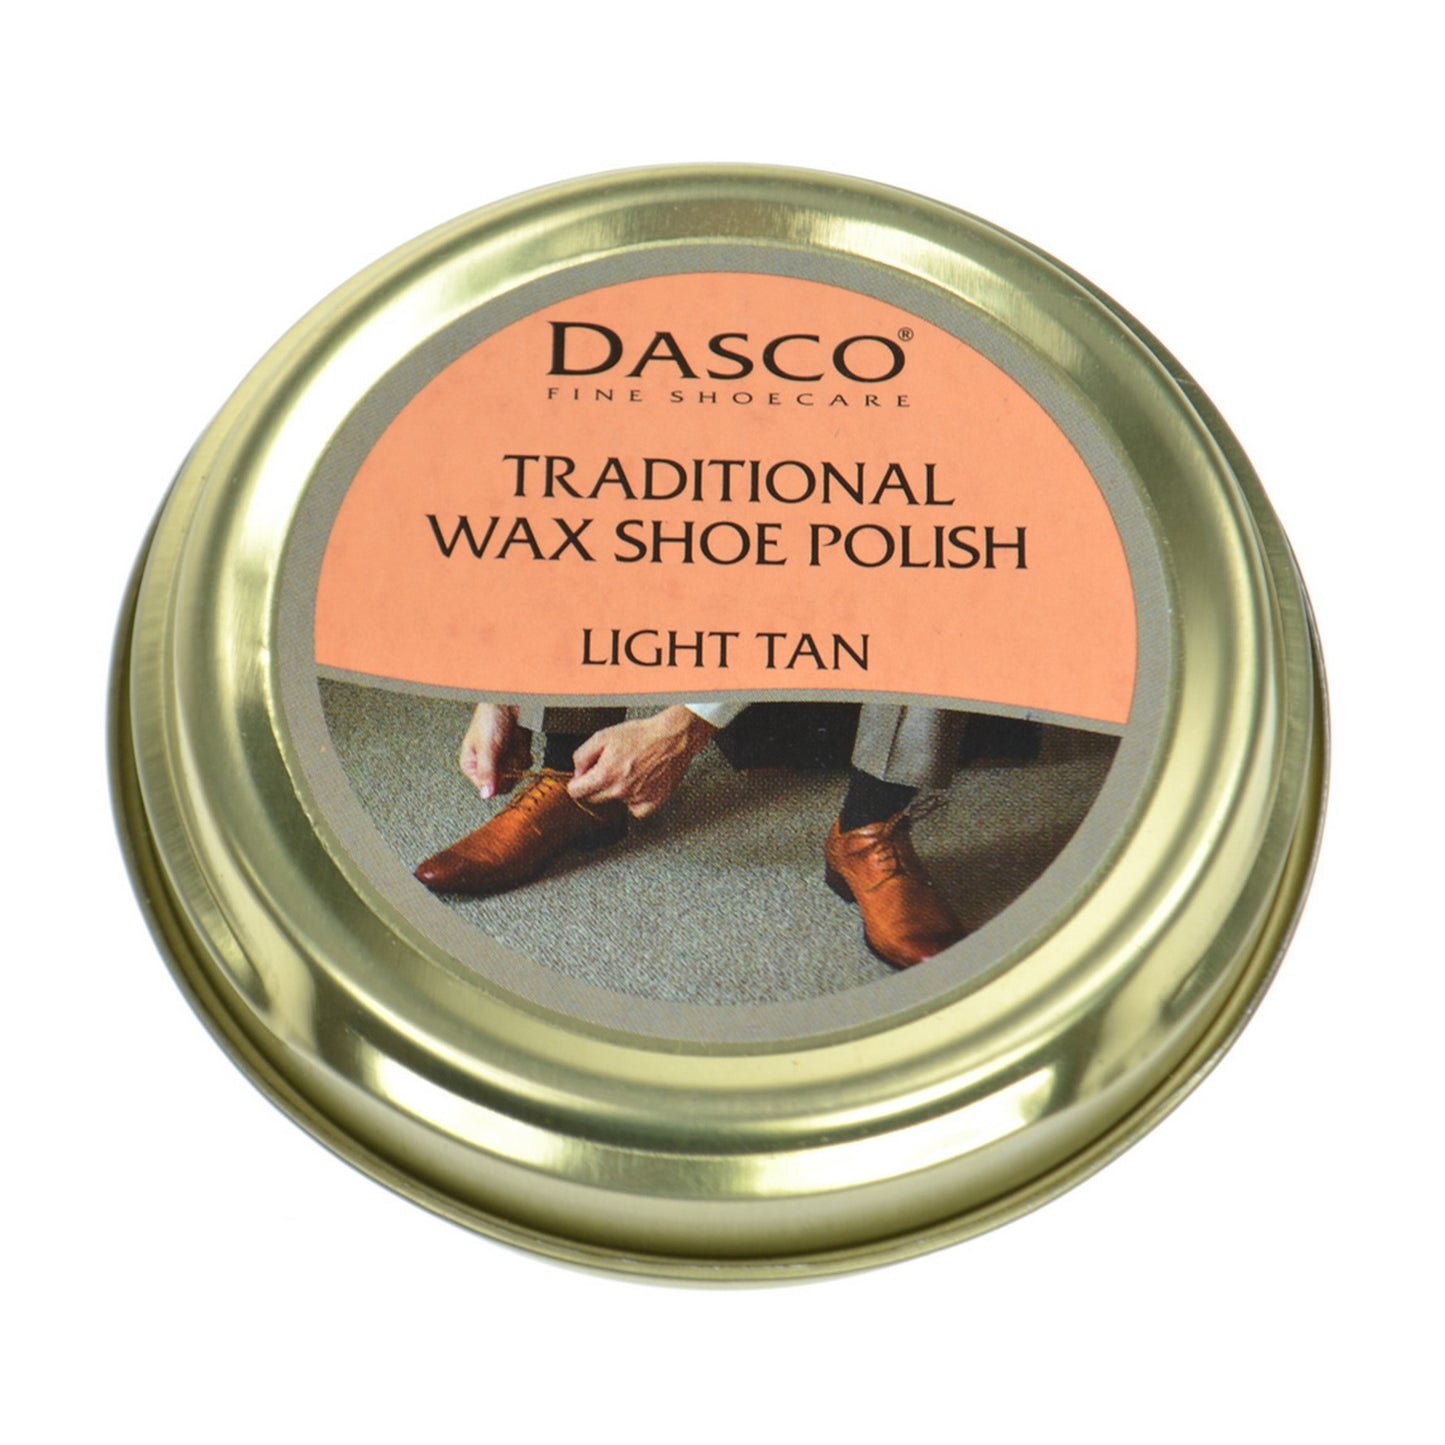 Dasco Wax Shoe Polish - Light Tan No. 116